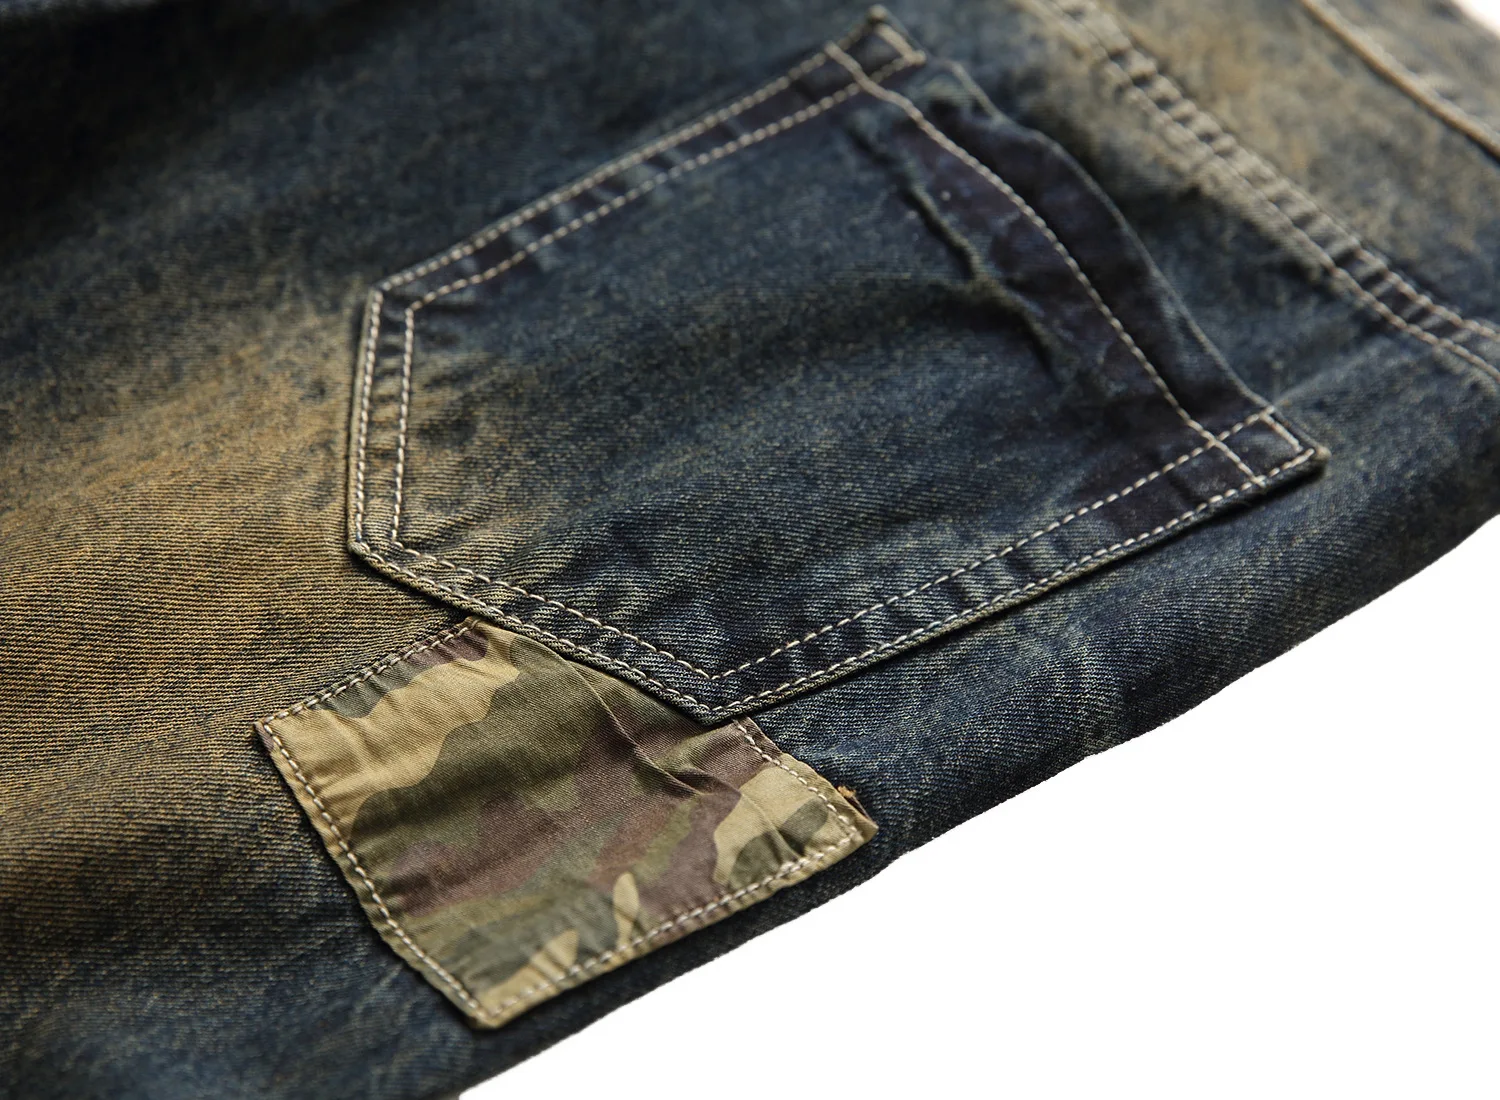 Модные мужские джинсы в стиле хип-хоп с заплатками в стиле ретро, мужские байкерские джинсы на молнии с дырками, рваные джинсы свободного кроя